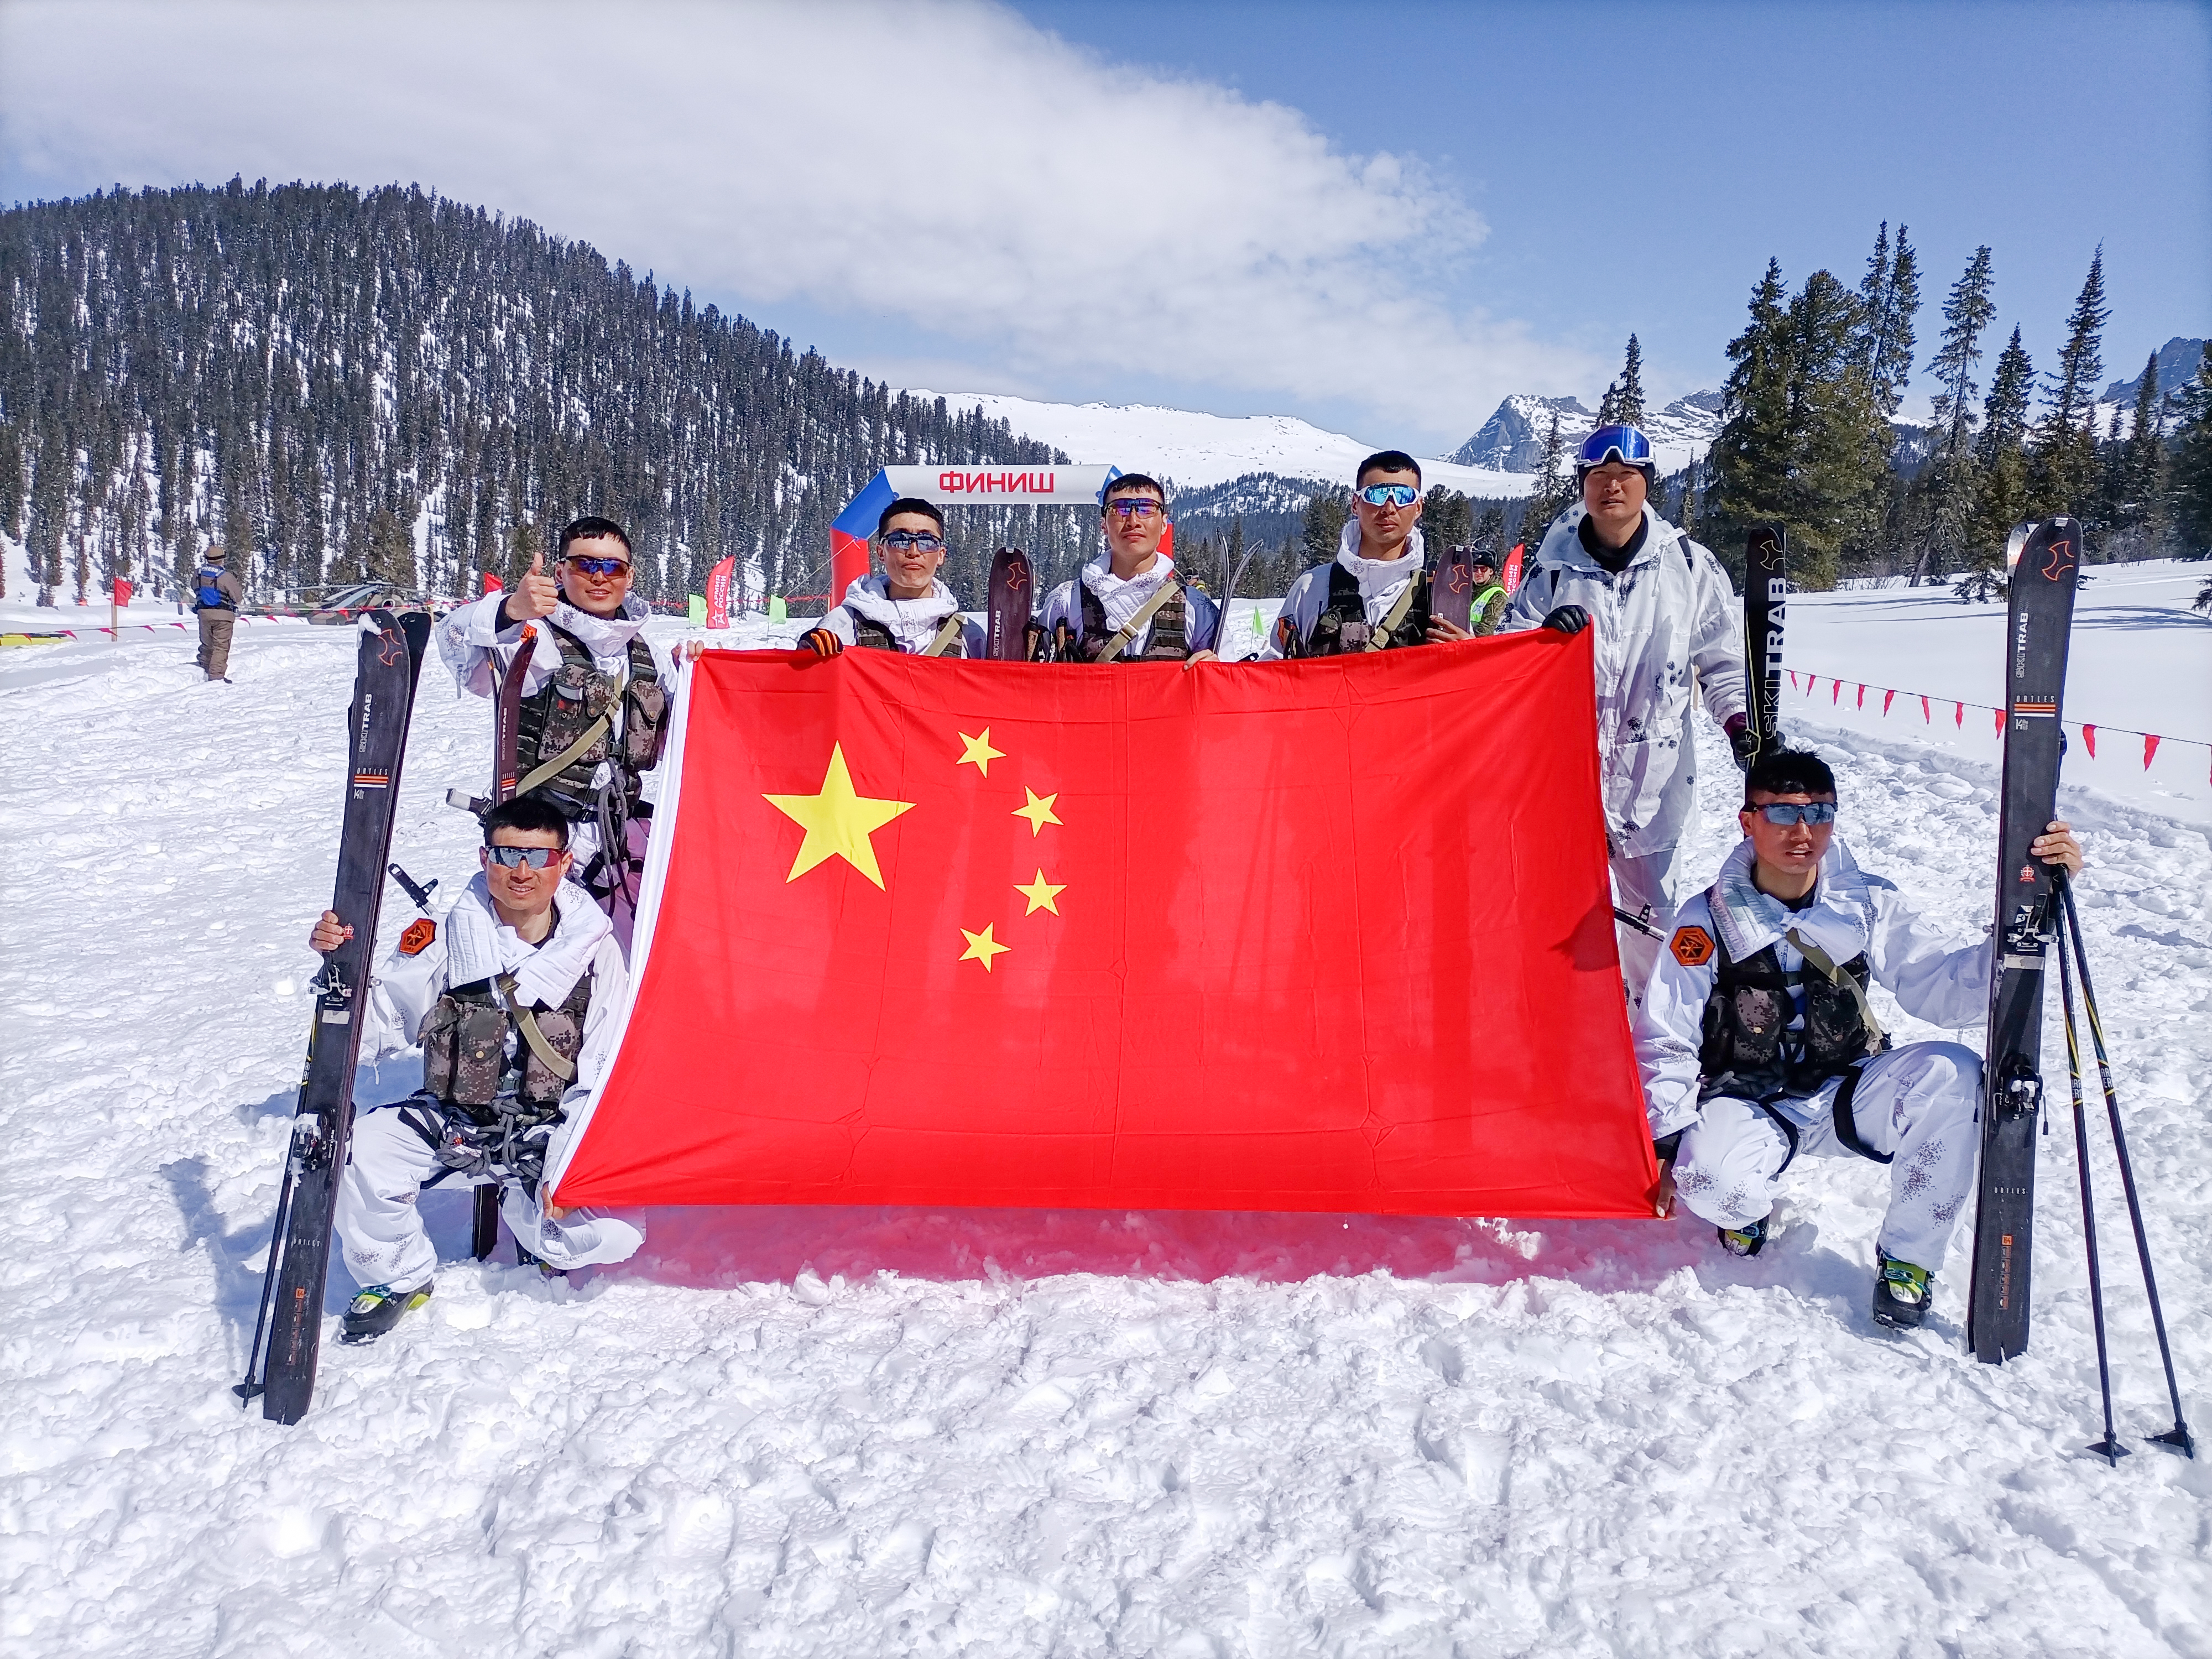 萨彦岭行军雪地作战行军,中国参赛队勇夺10个项目中的5项第一